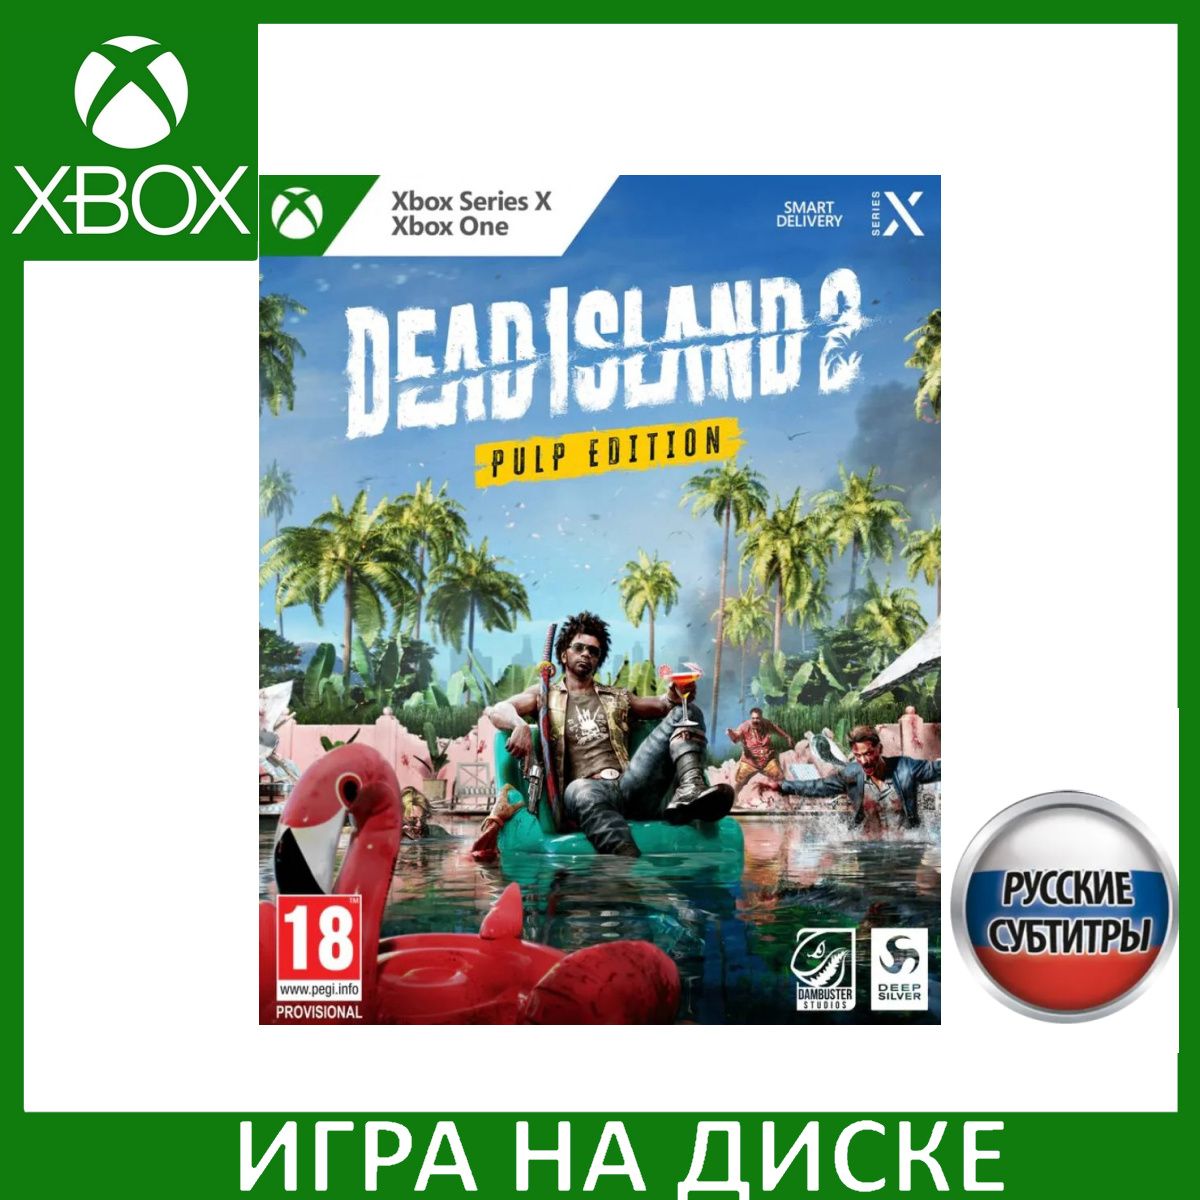 Dead OZON Island интернет-магазине доставкой Pulp (1331079050) One, в Series, Edition Xbox 2 субтитры) цене (Xbox Русские купить низкой по с Игра